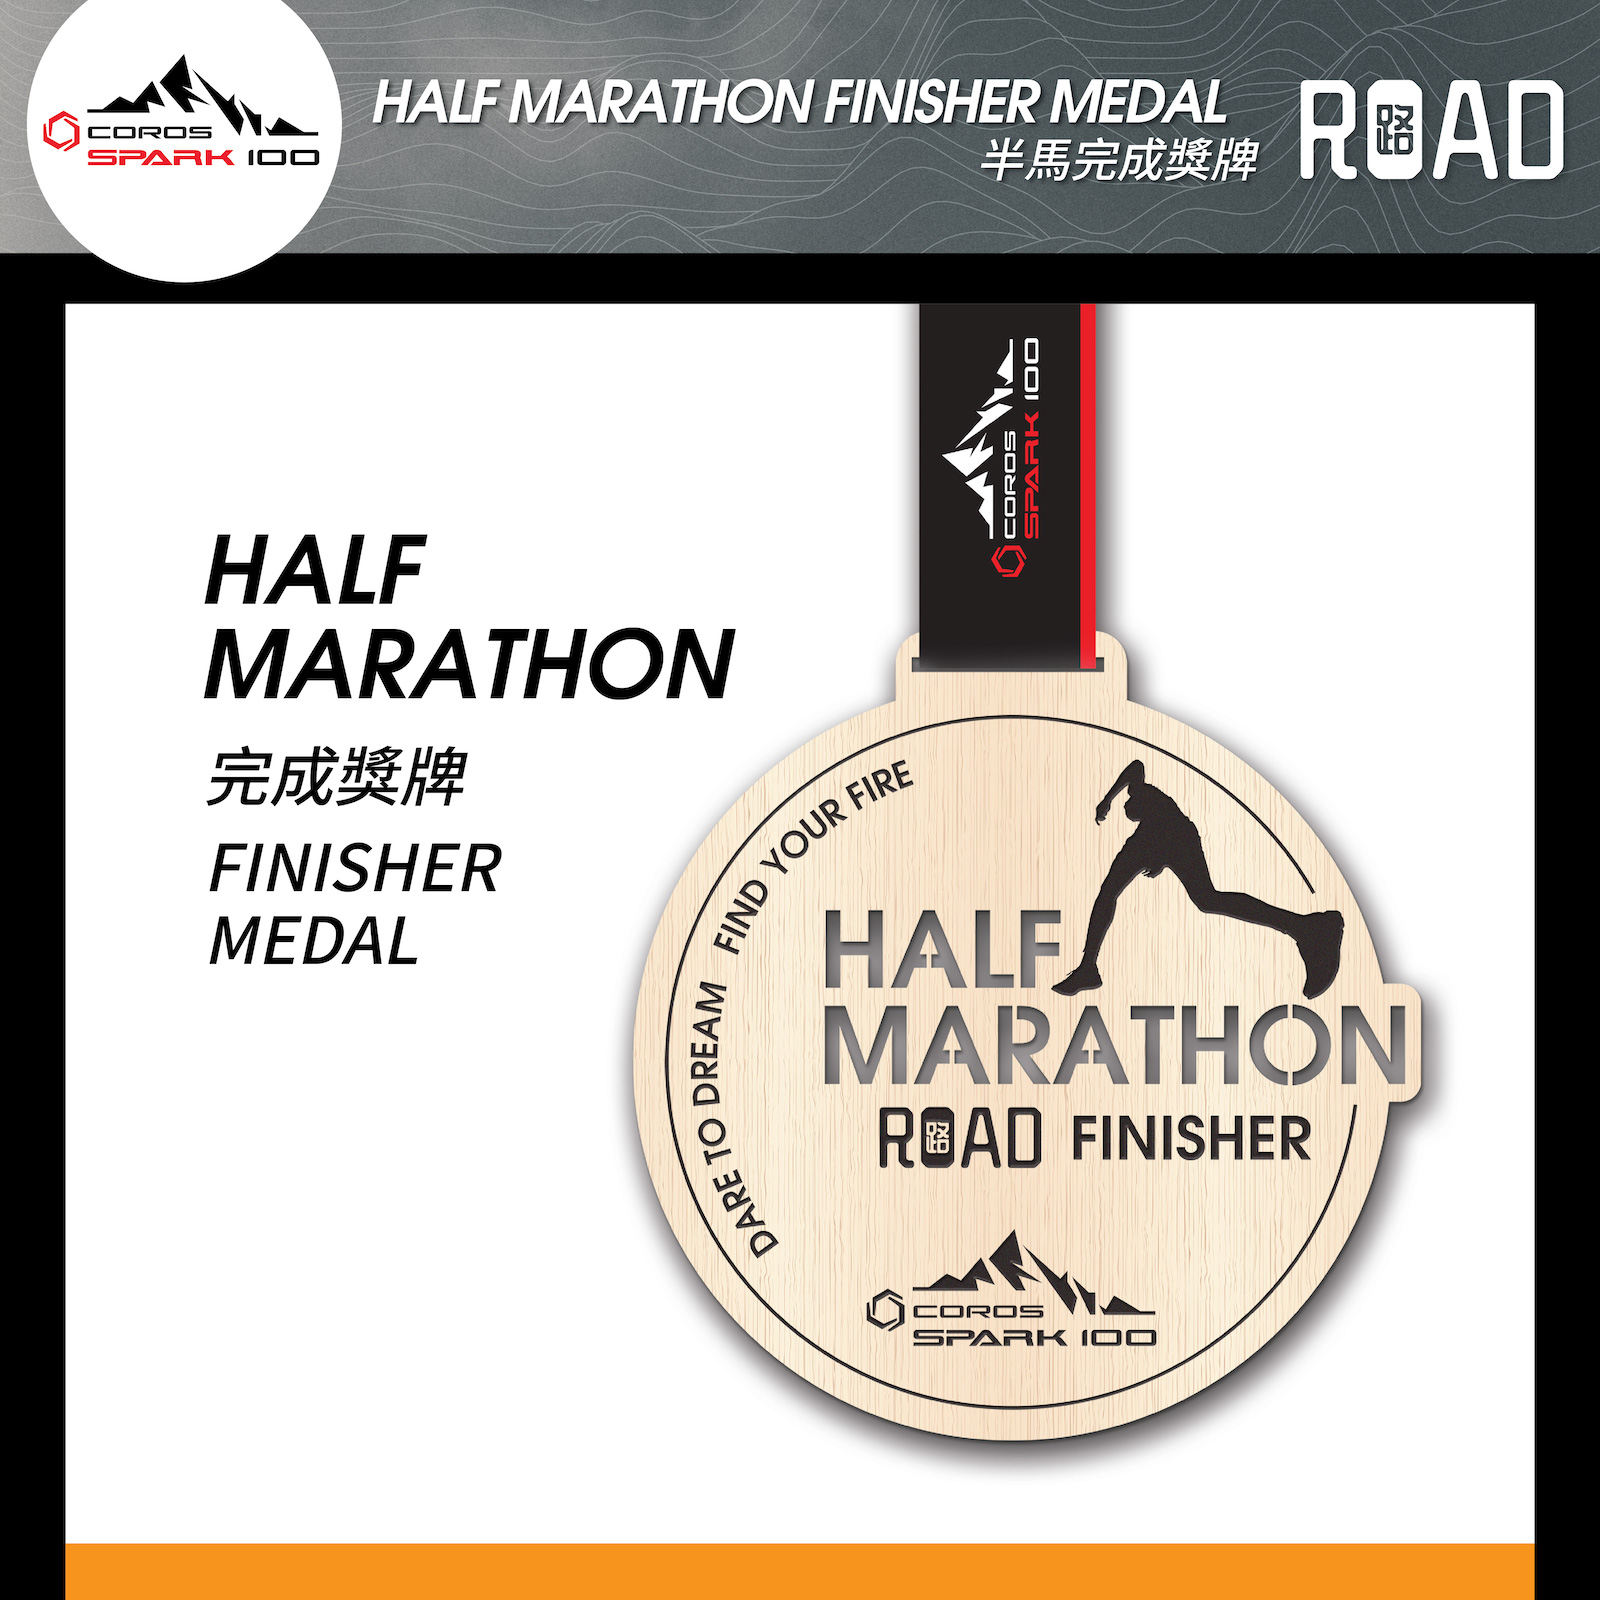 Half Marathon(Road) Running Finisher Medal